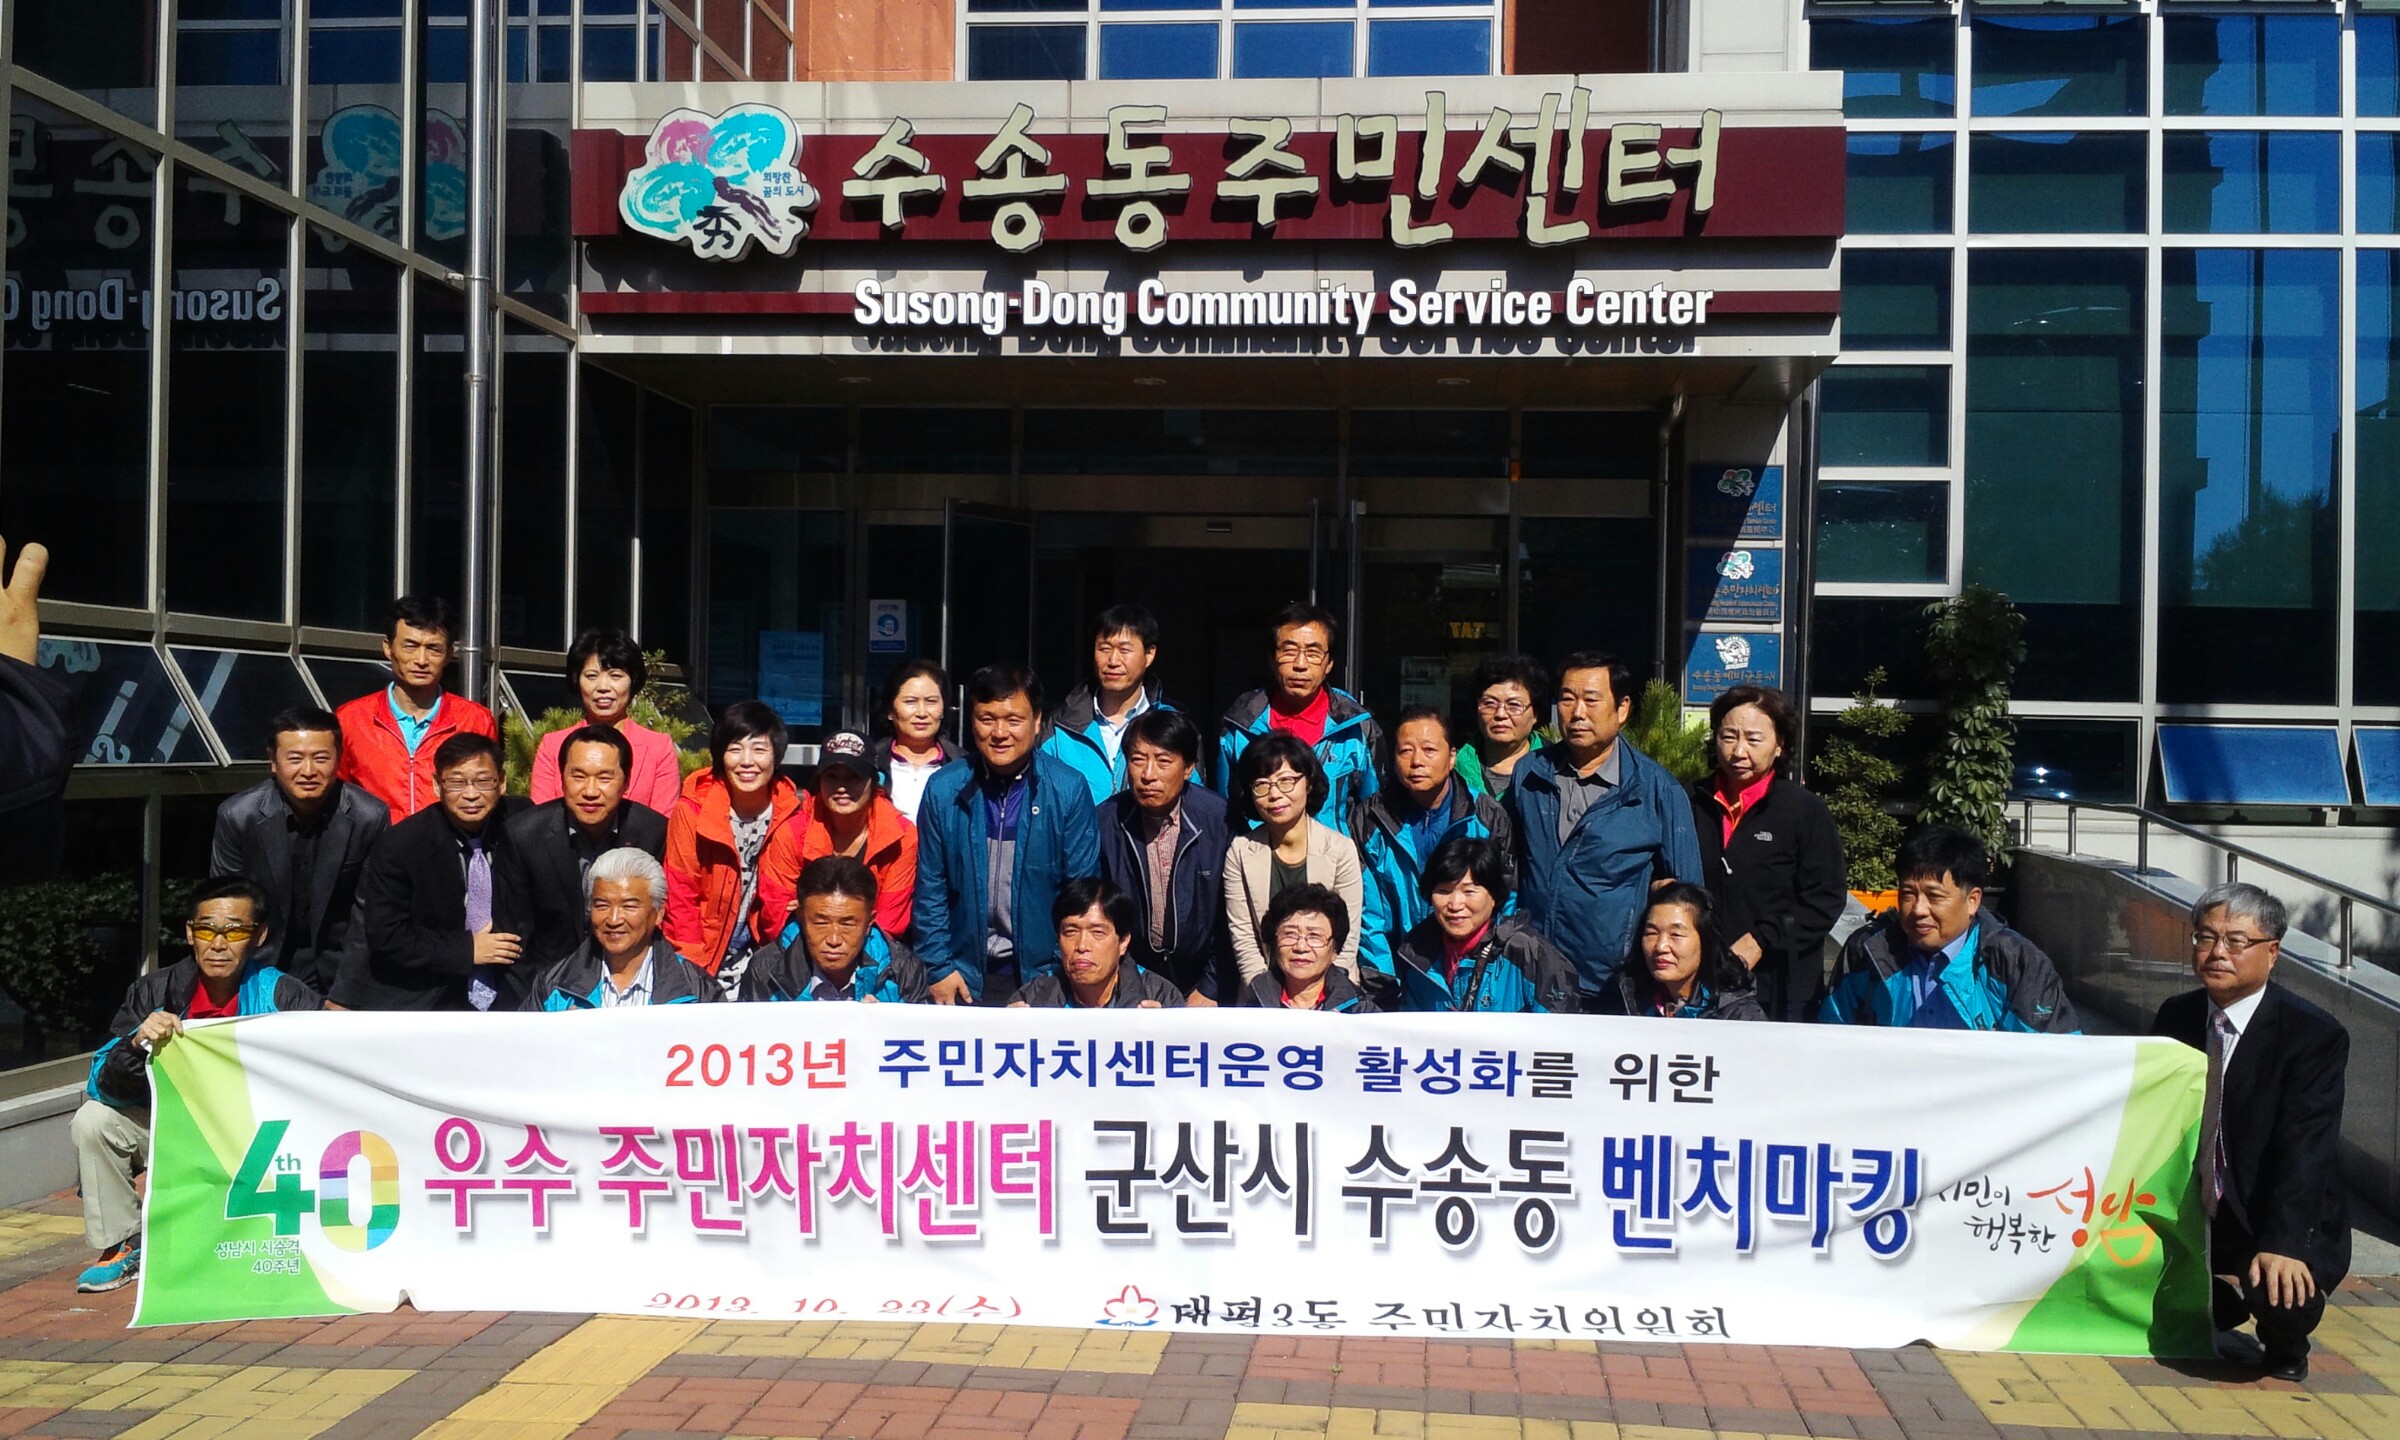 성남시 태평3동, 우수주민자치센터 벤치마킹위해 수송동 방문